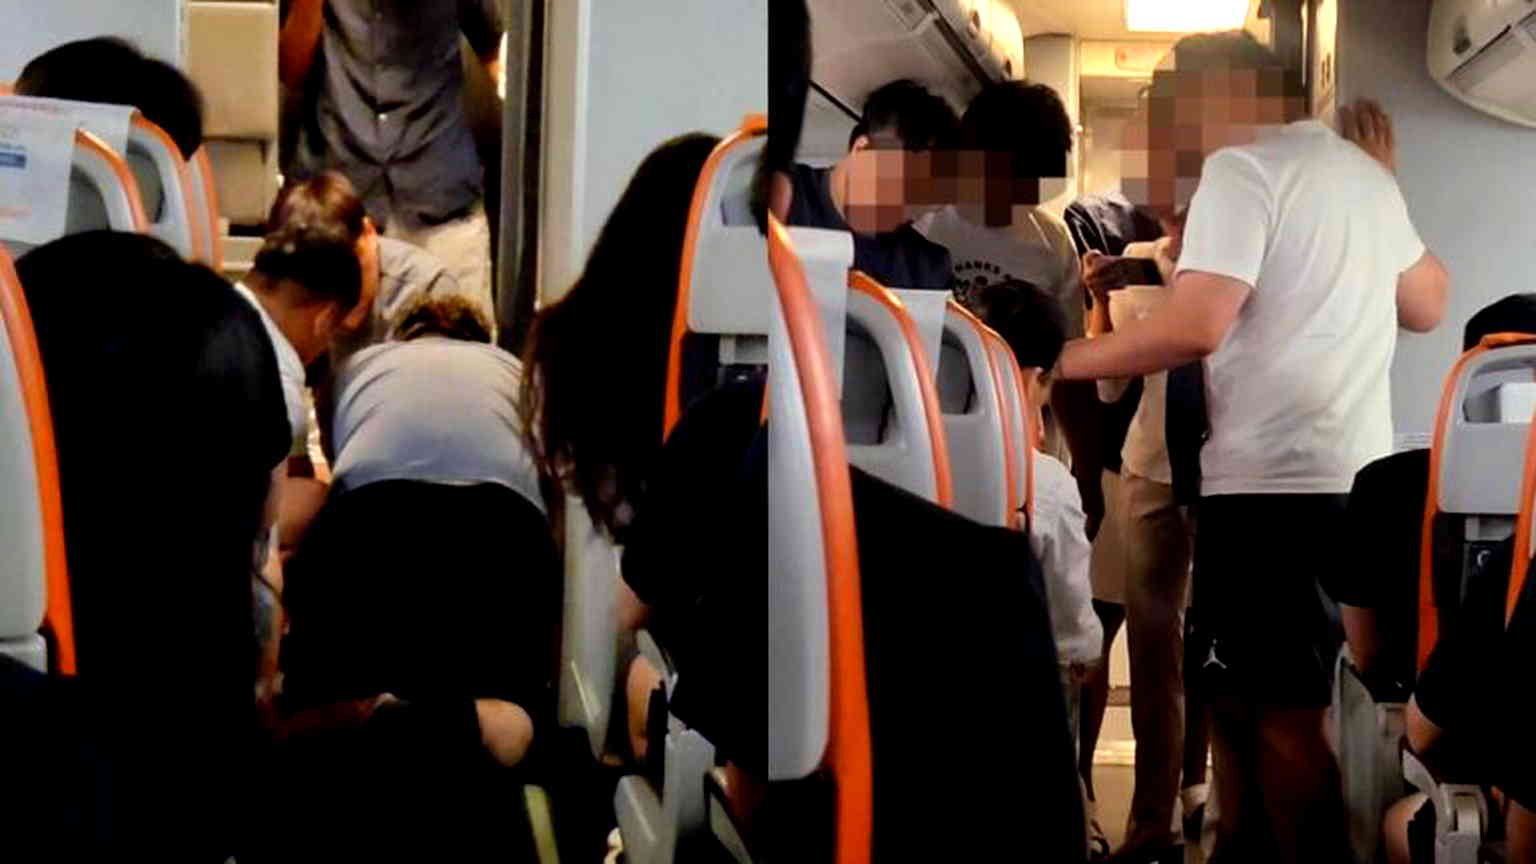 S. Korean teen lassoed while attempting to open plane door mid-flight